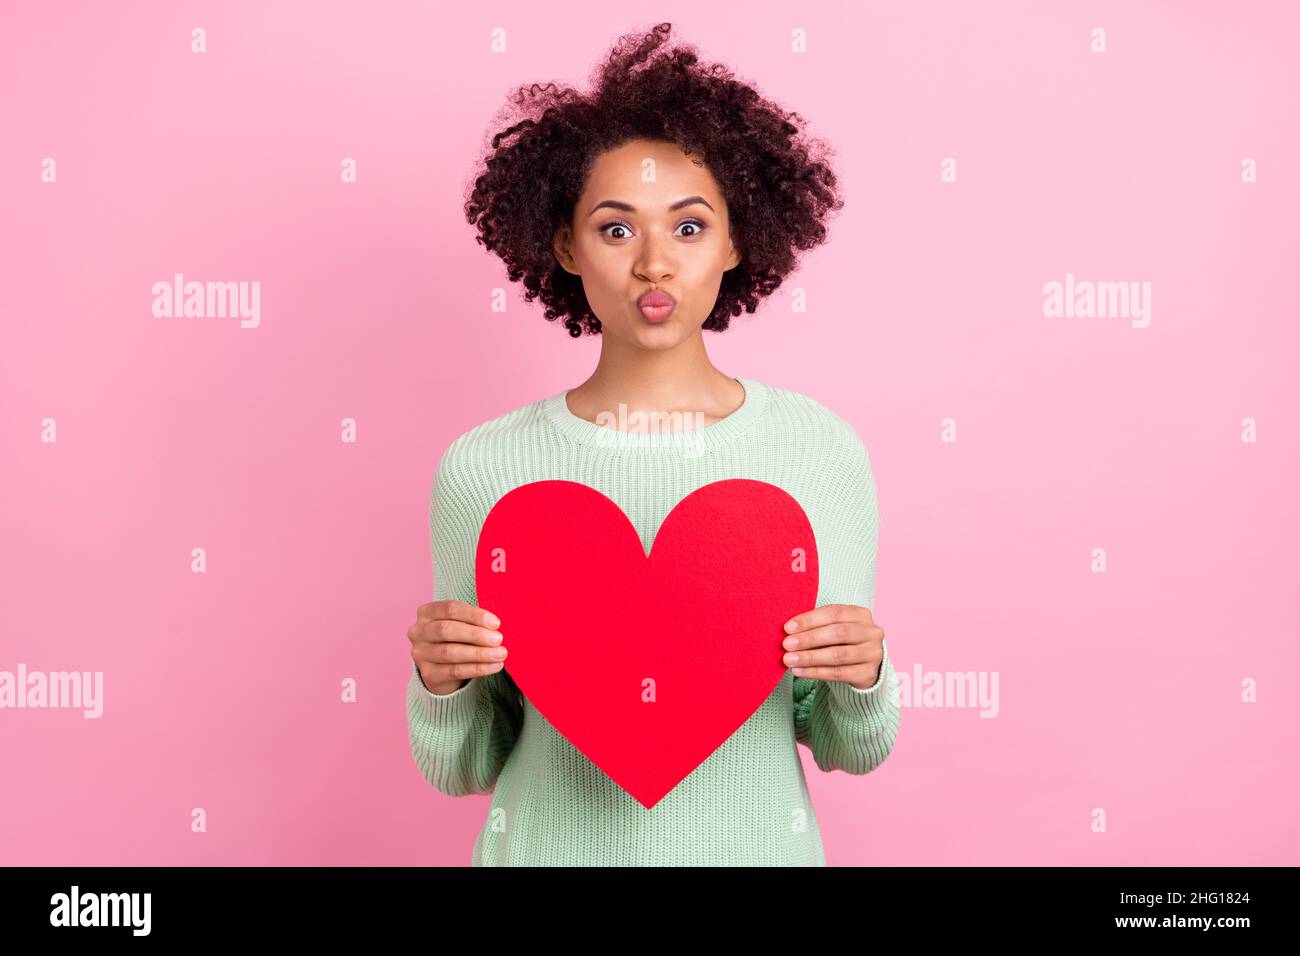 Photo d'adorable femme en peau sombre baiser lèvres tenir coeur symbole carte postale isolée sur fond de couleur rose Banque D'Images